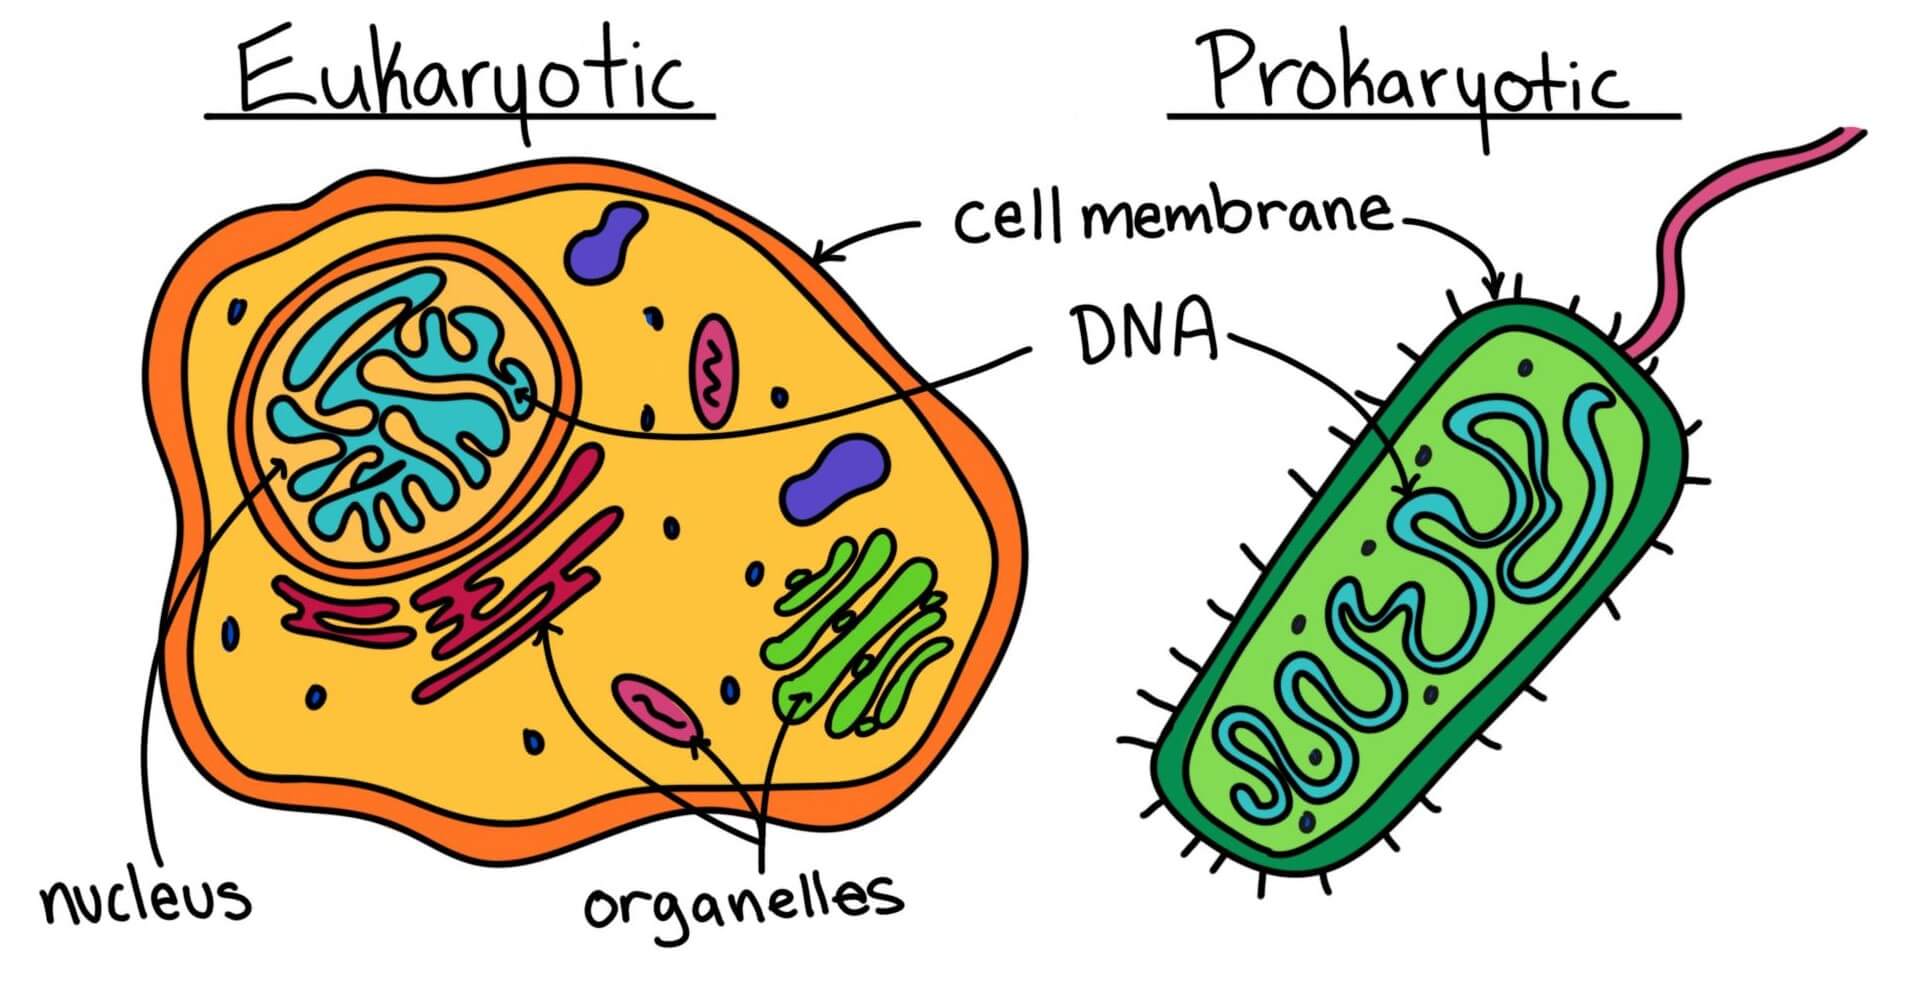 eukaryotic cell vs prokaryotic cell